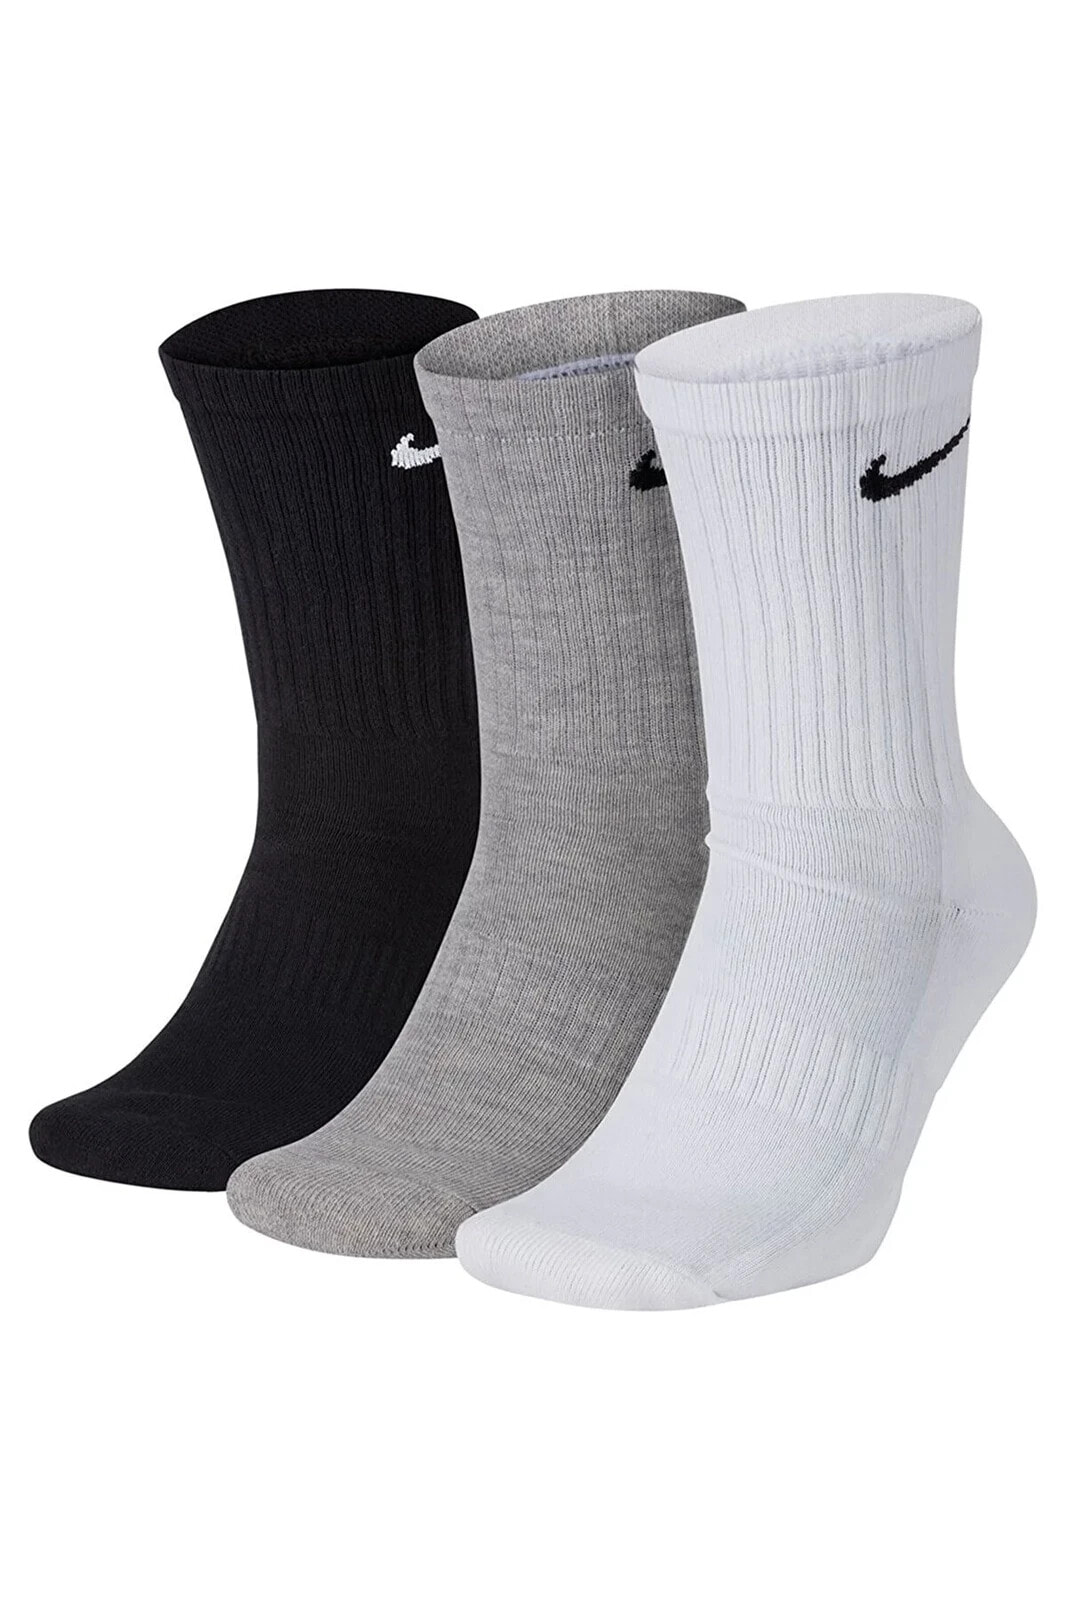 Erkek Siyah Gri Beyaz 3'lü Antrenman Çorabı Sx7664-901